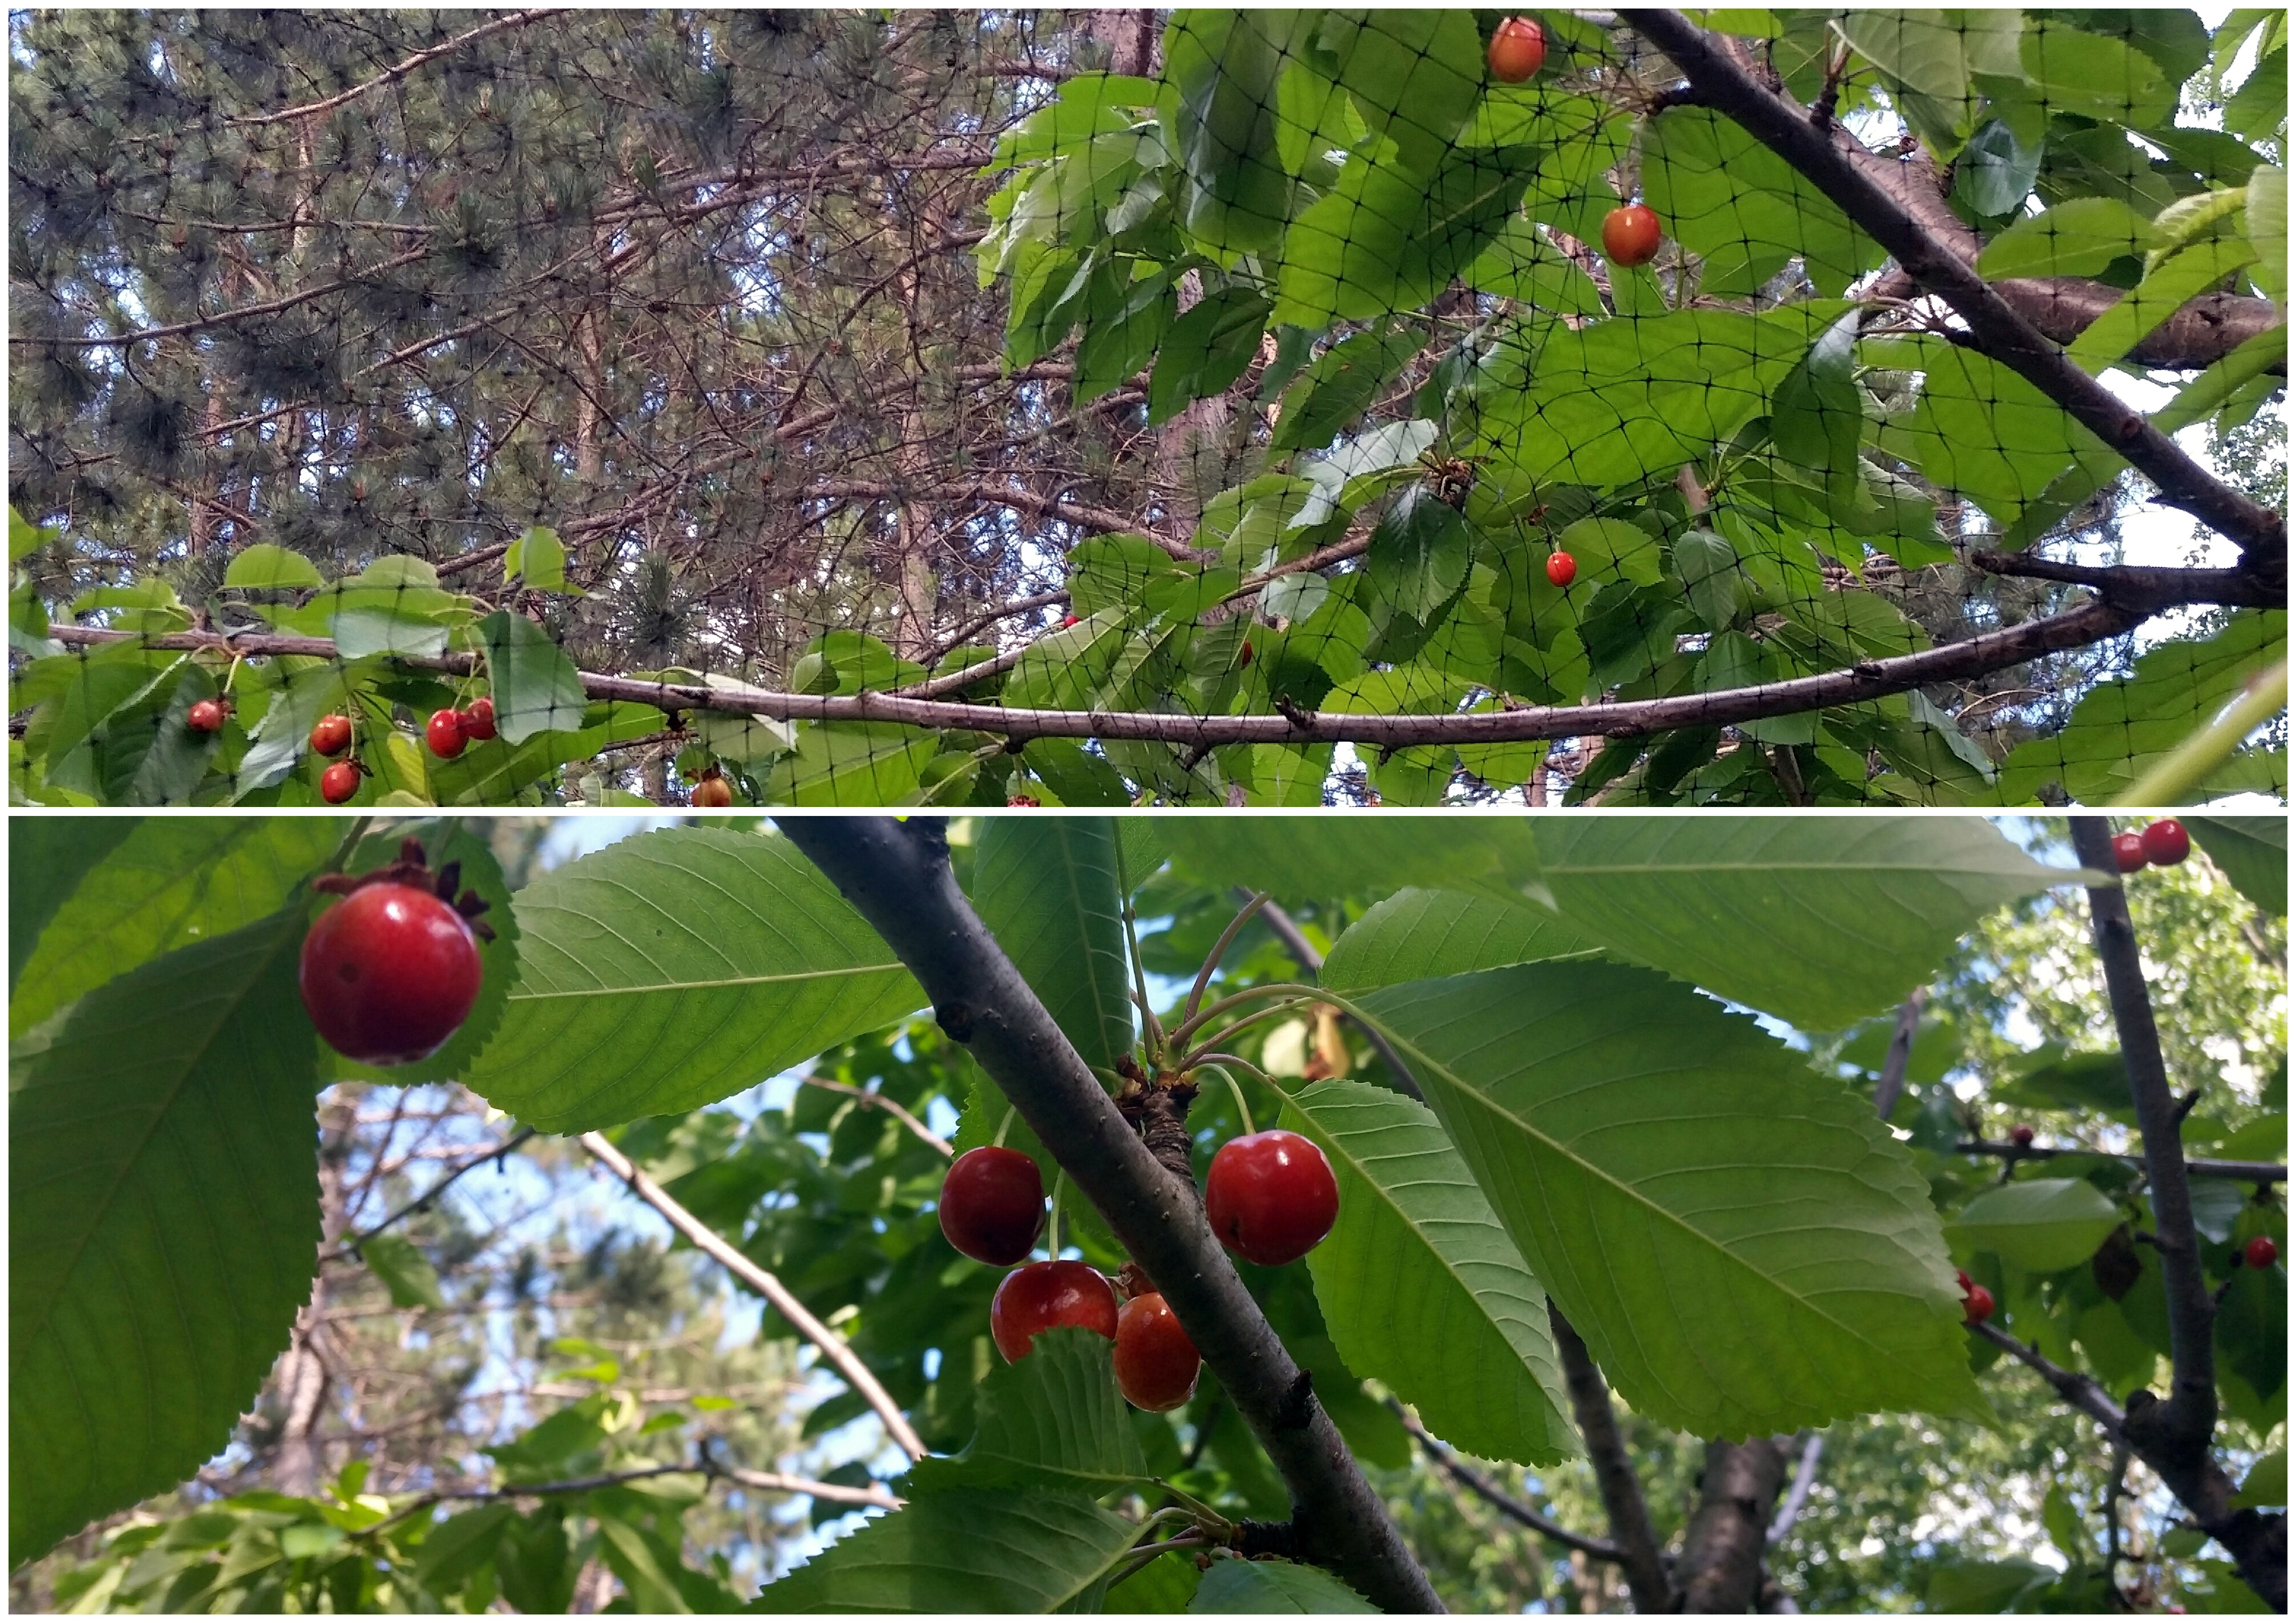 cherry tree netting ottawa ontario pests harvest fruit organic gardening tips